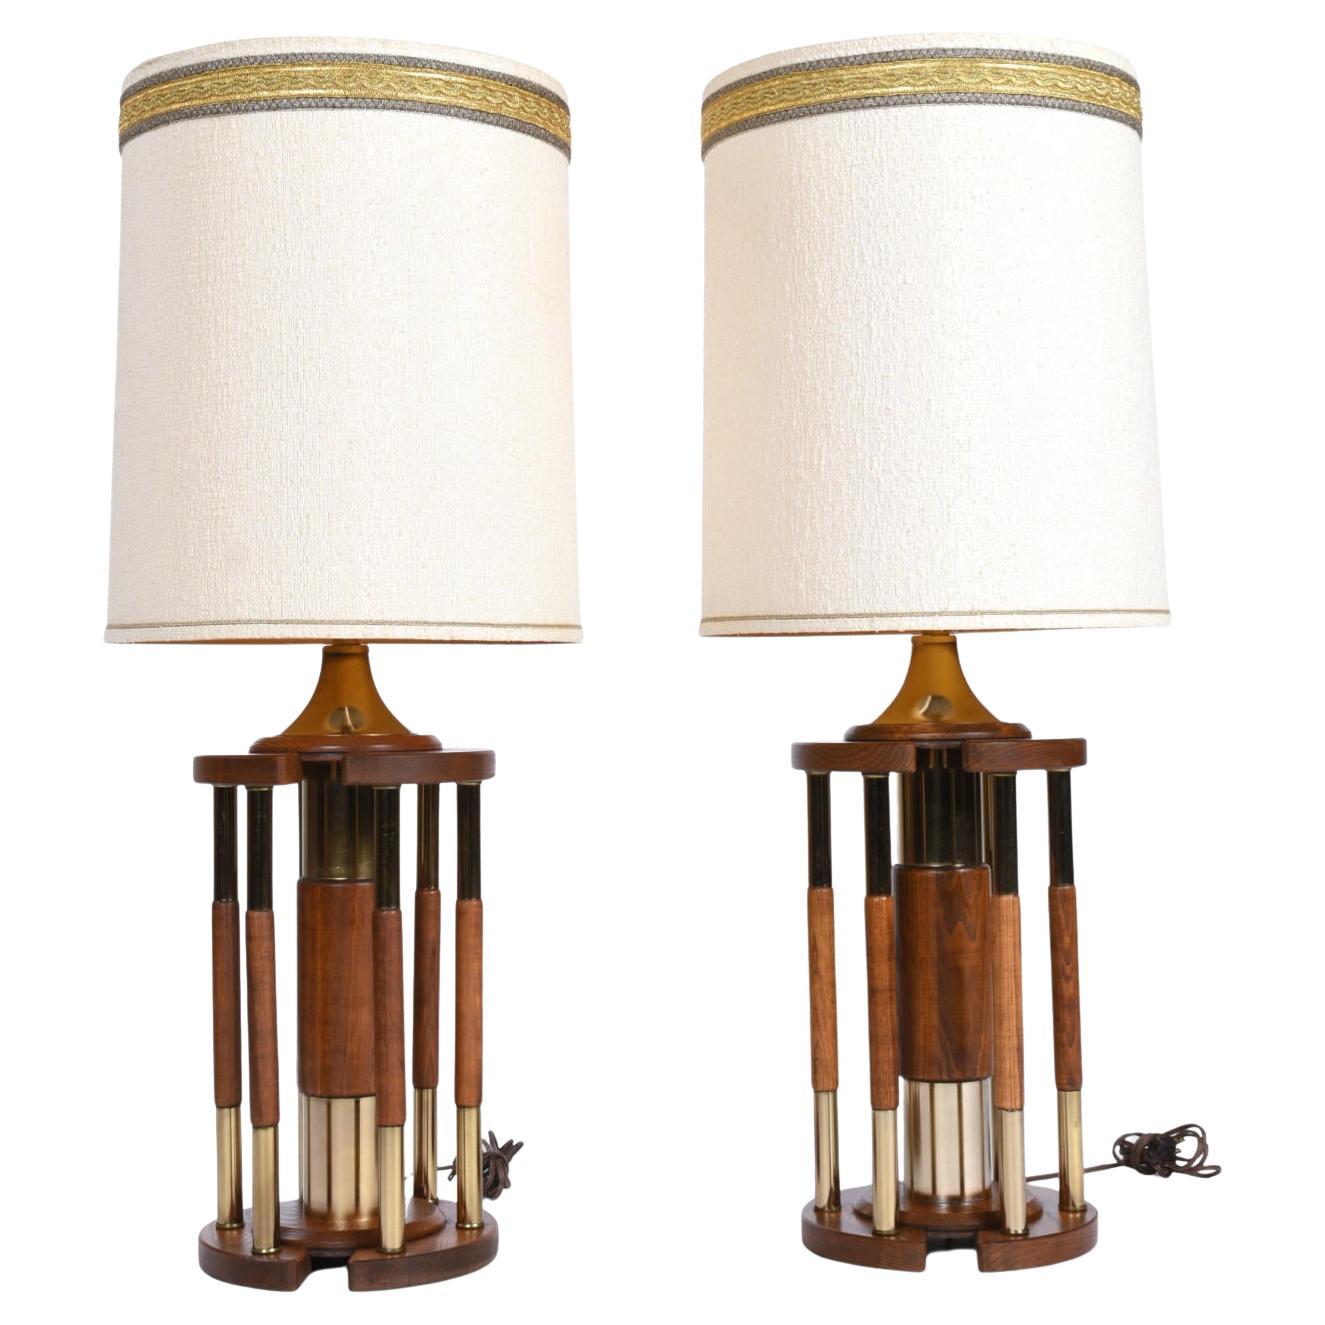 Les abat-jours sont inclus et vendus par paire. 

Lampes de table jumbo vintage des années 1970 avec un design architectural en rotonde. Les lampes cylindriques sont constituées d'un ensemble de piliers en laiton et en chêne de couleur dorée. Le